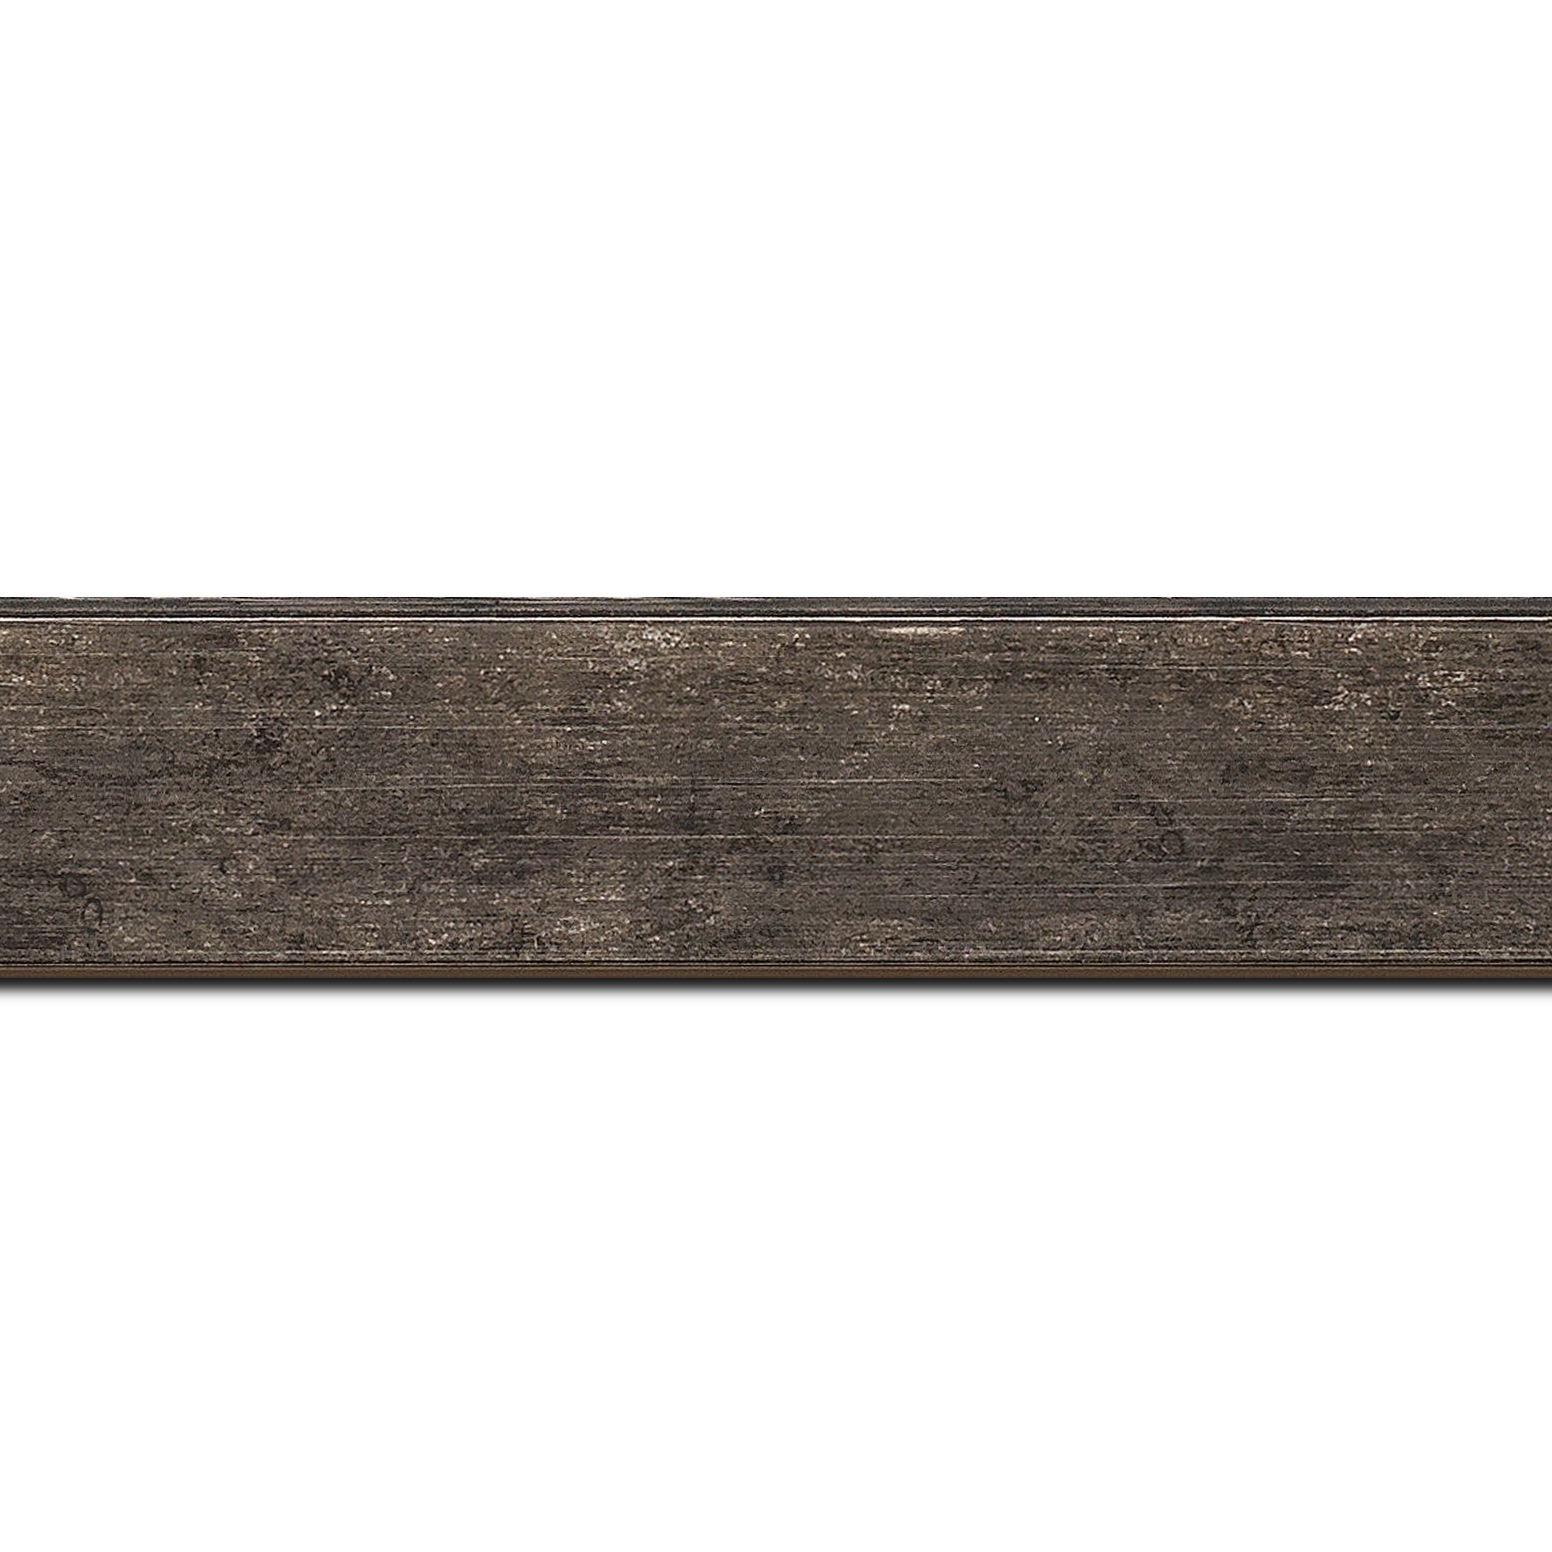 Pack par 12m, bois profil plat incliné largeur 3.7cm couleur noir ébène effet ressuyé (longueur baguette pouvant varier entre 2.40m et 3m selon arrivage des bois)